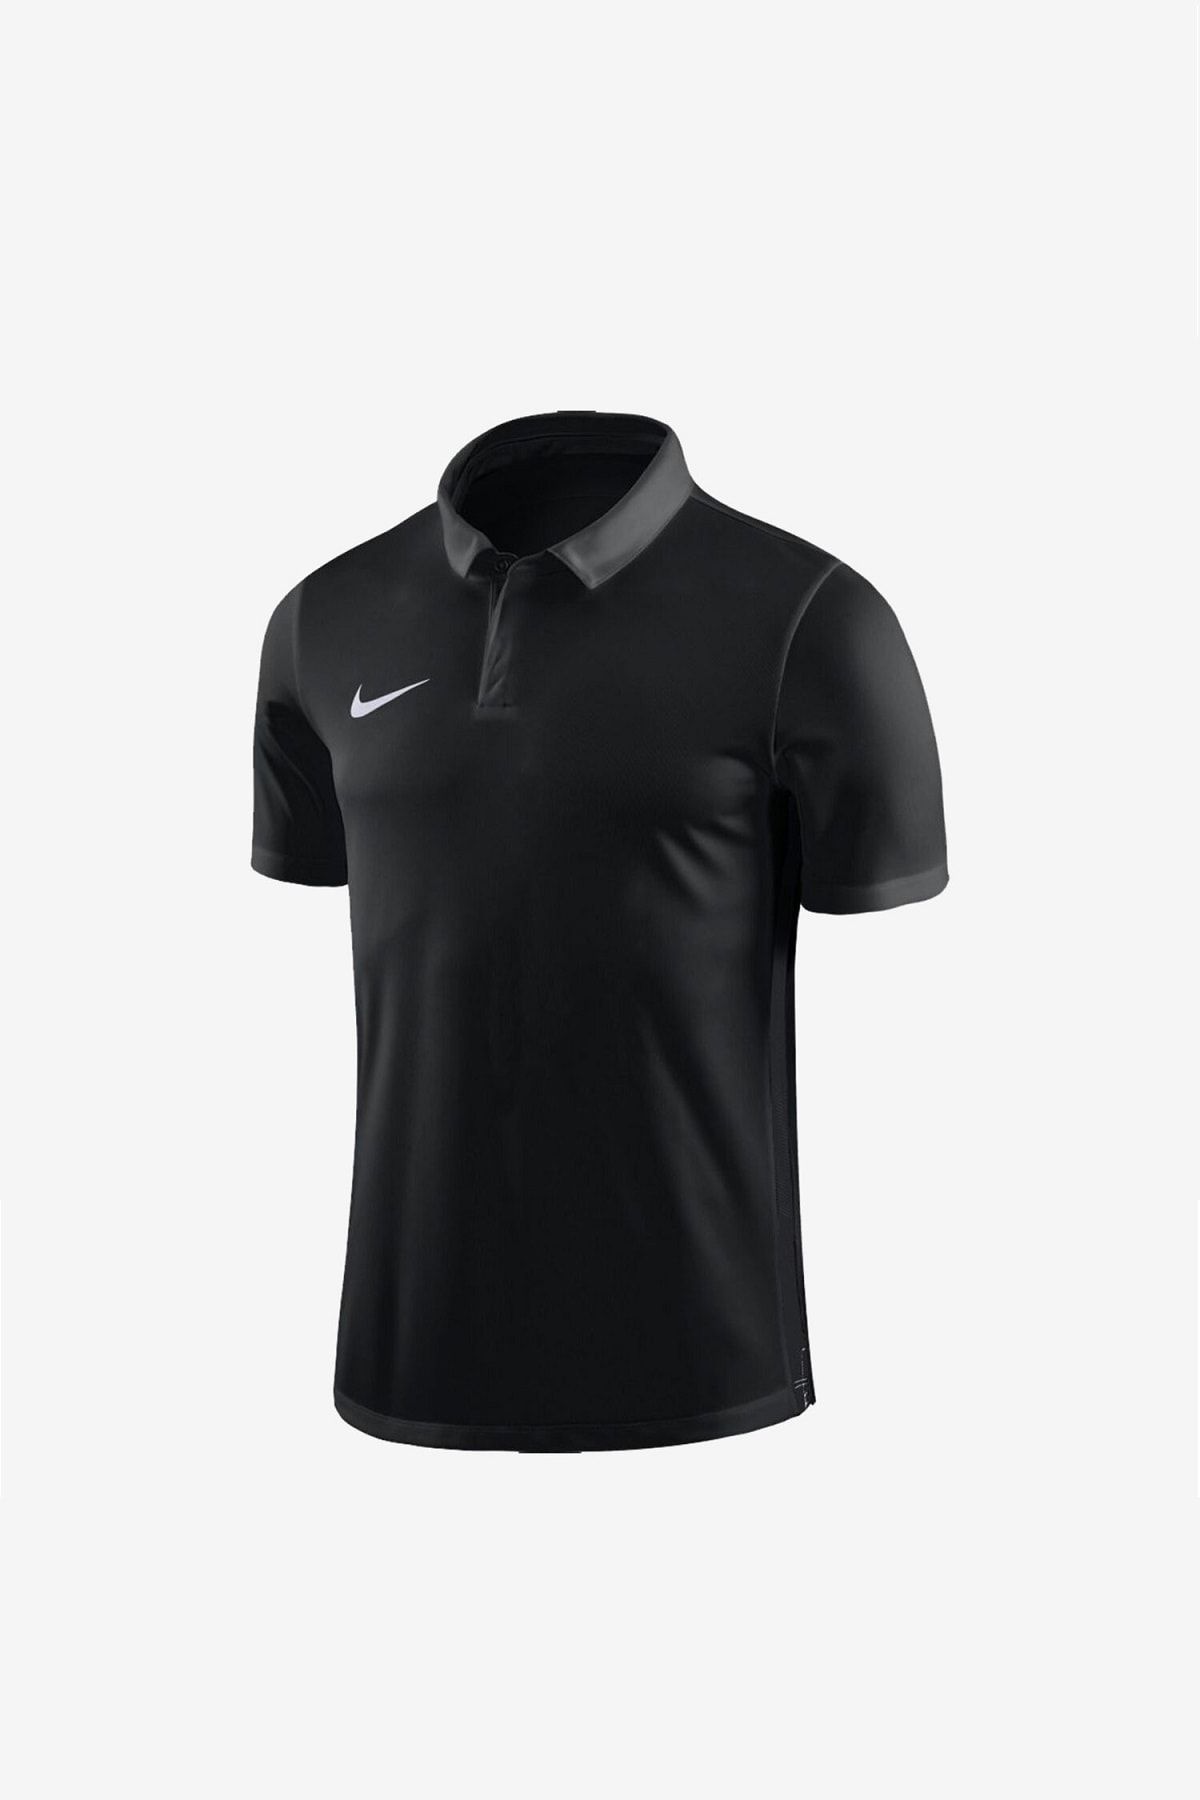 Nike Çocuk T- Shirt - Y Drt Acdmy18 Ss - 899991-010